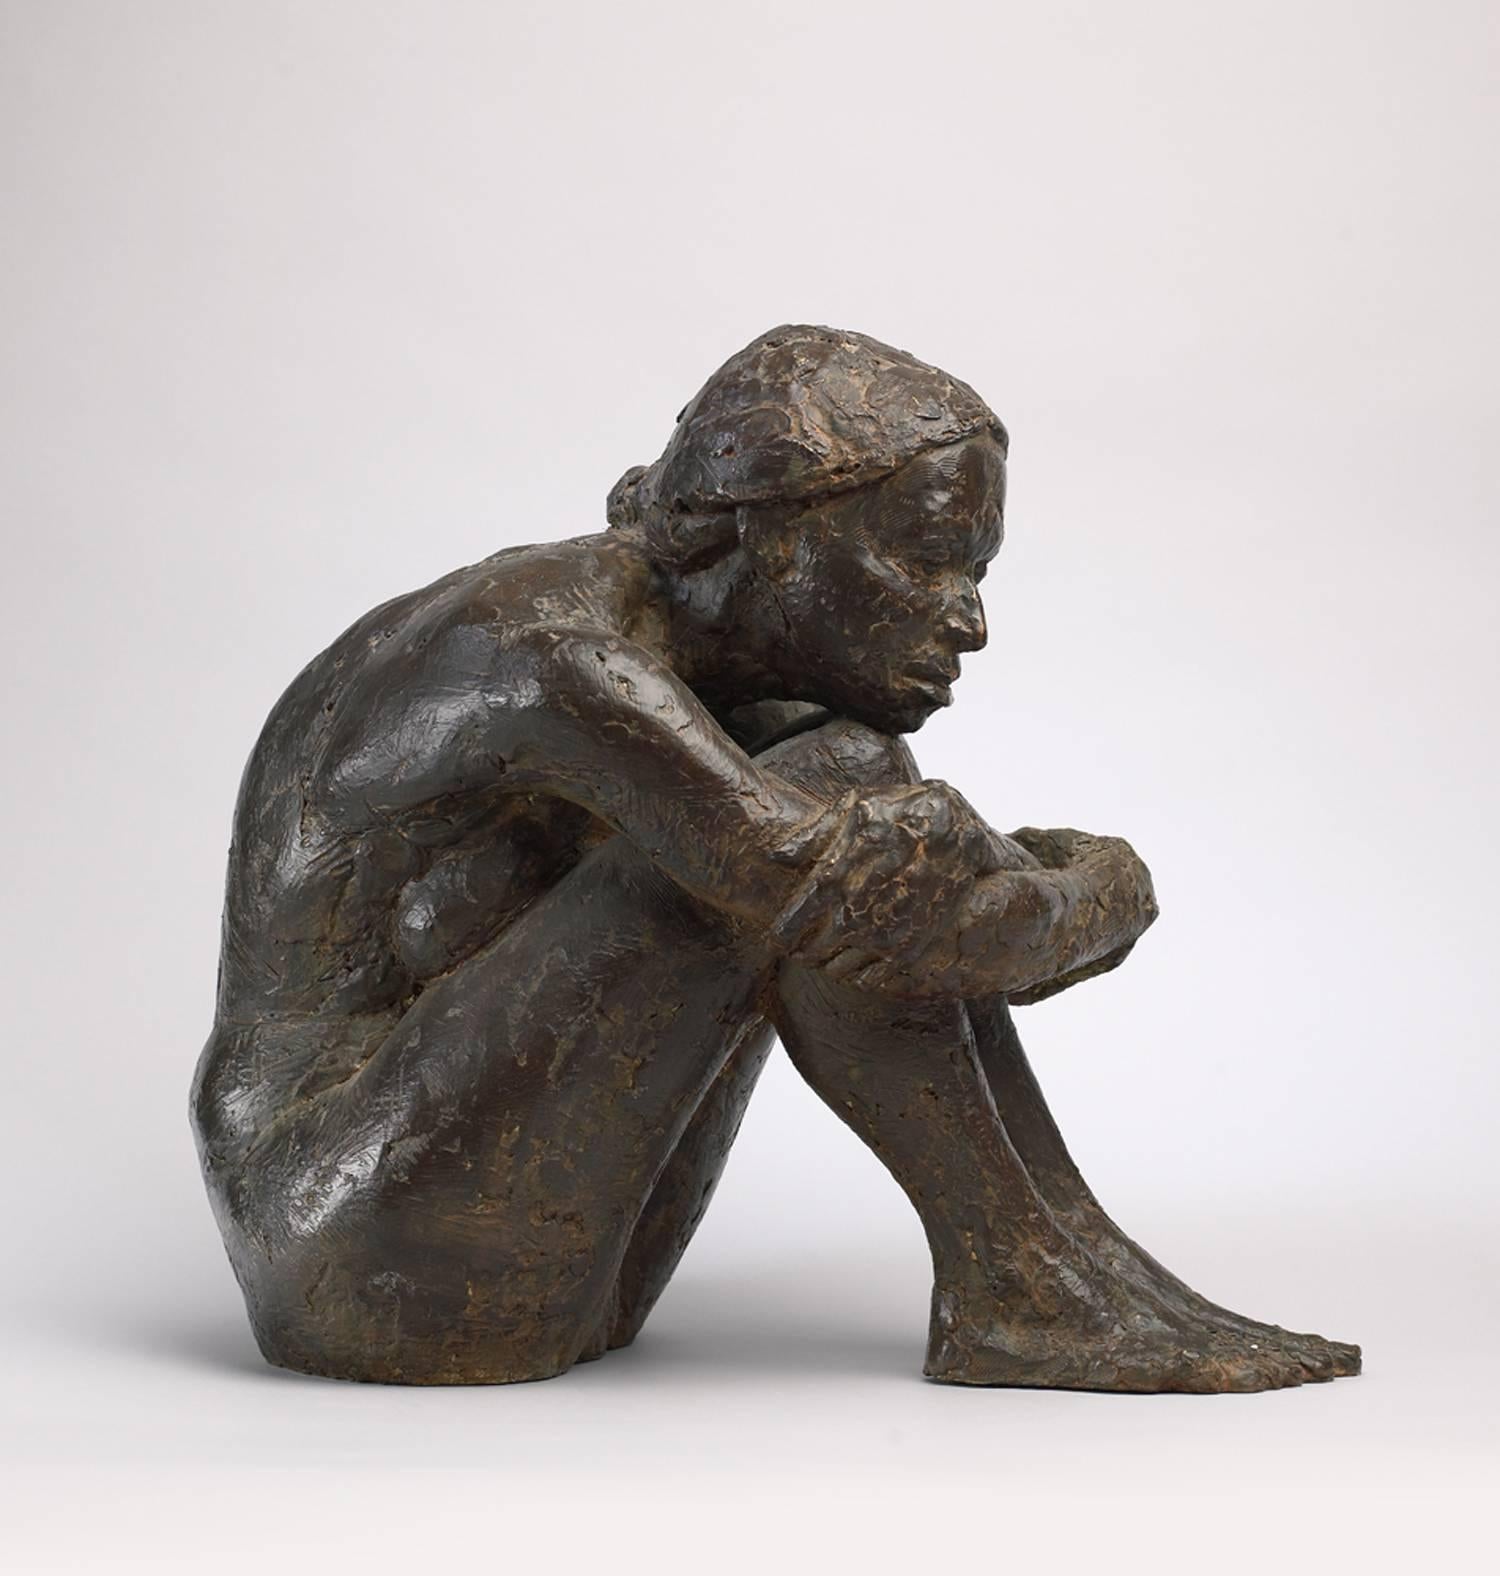 Peter Brooke Nude Sculpture - Seated Figure